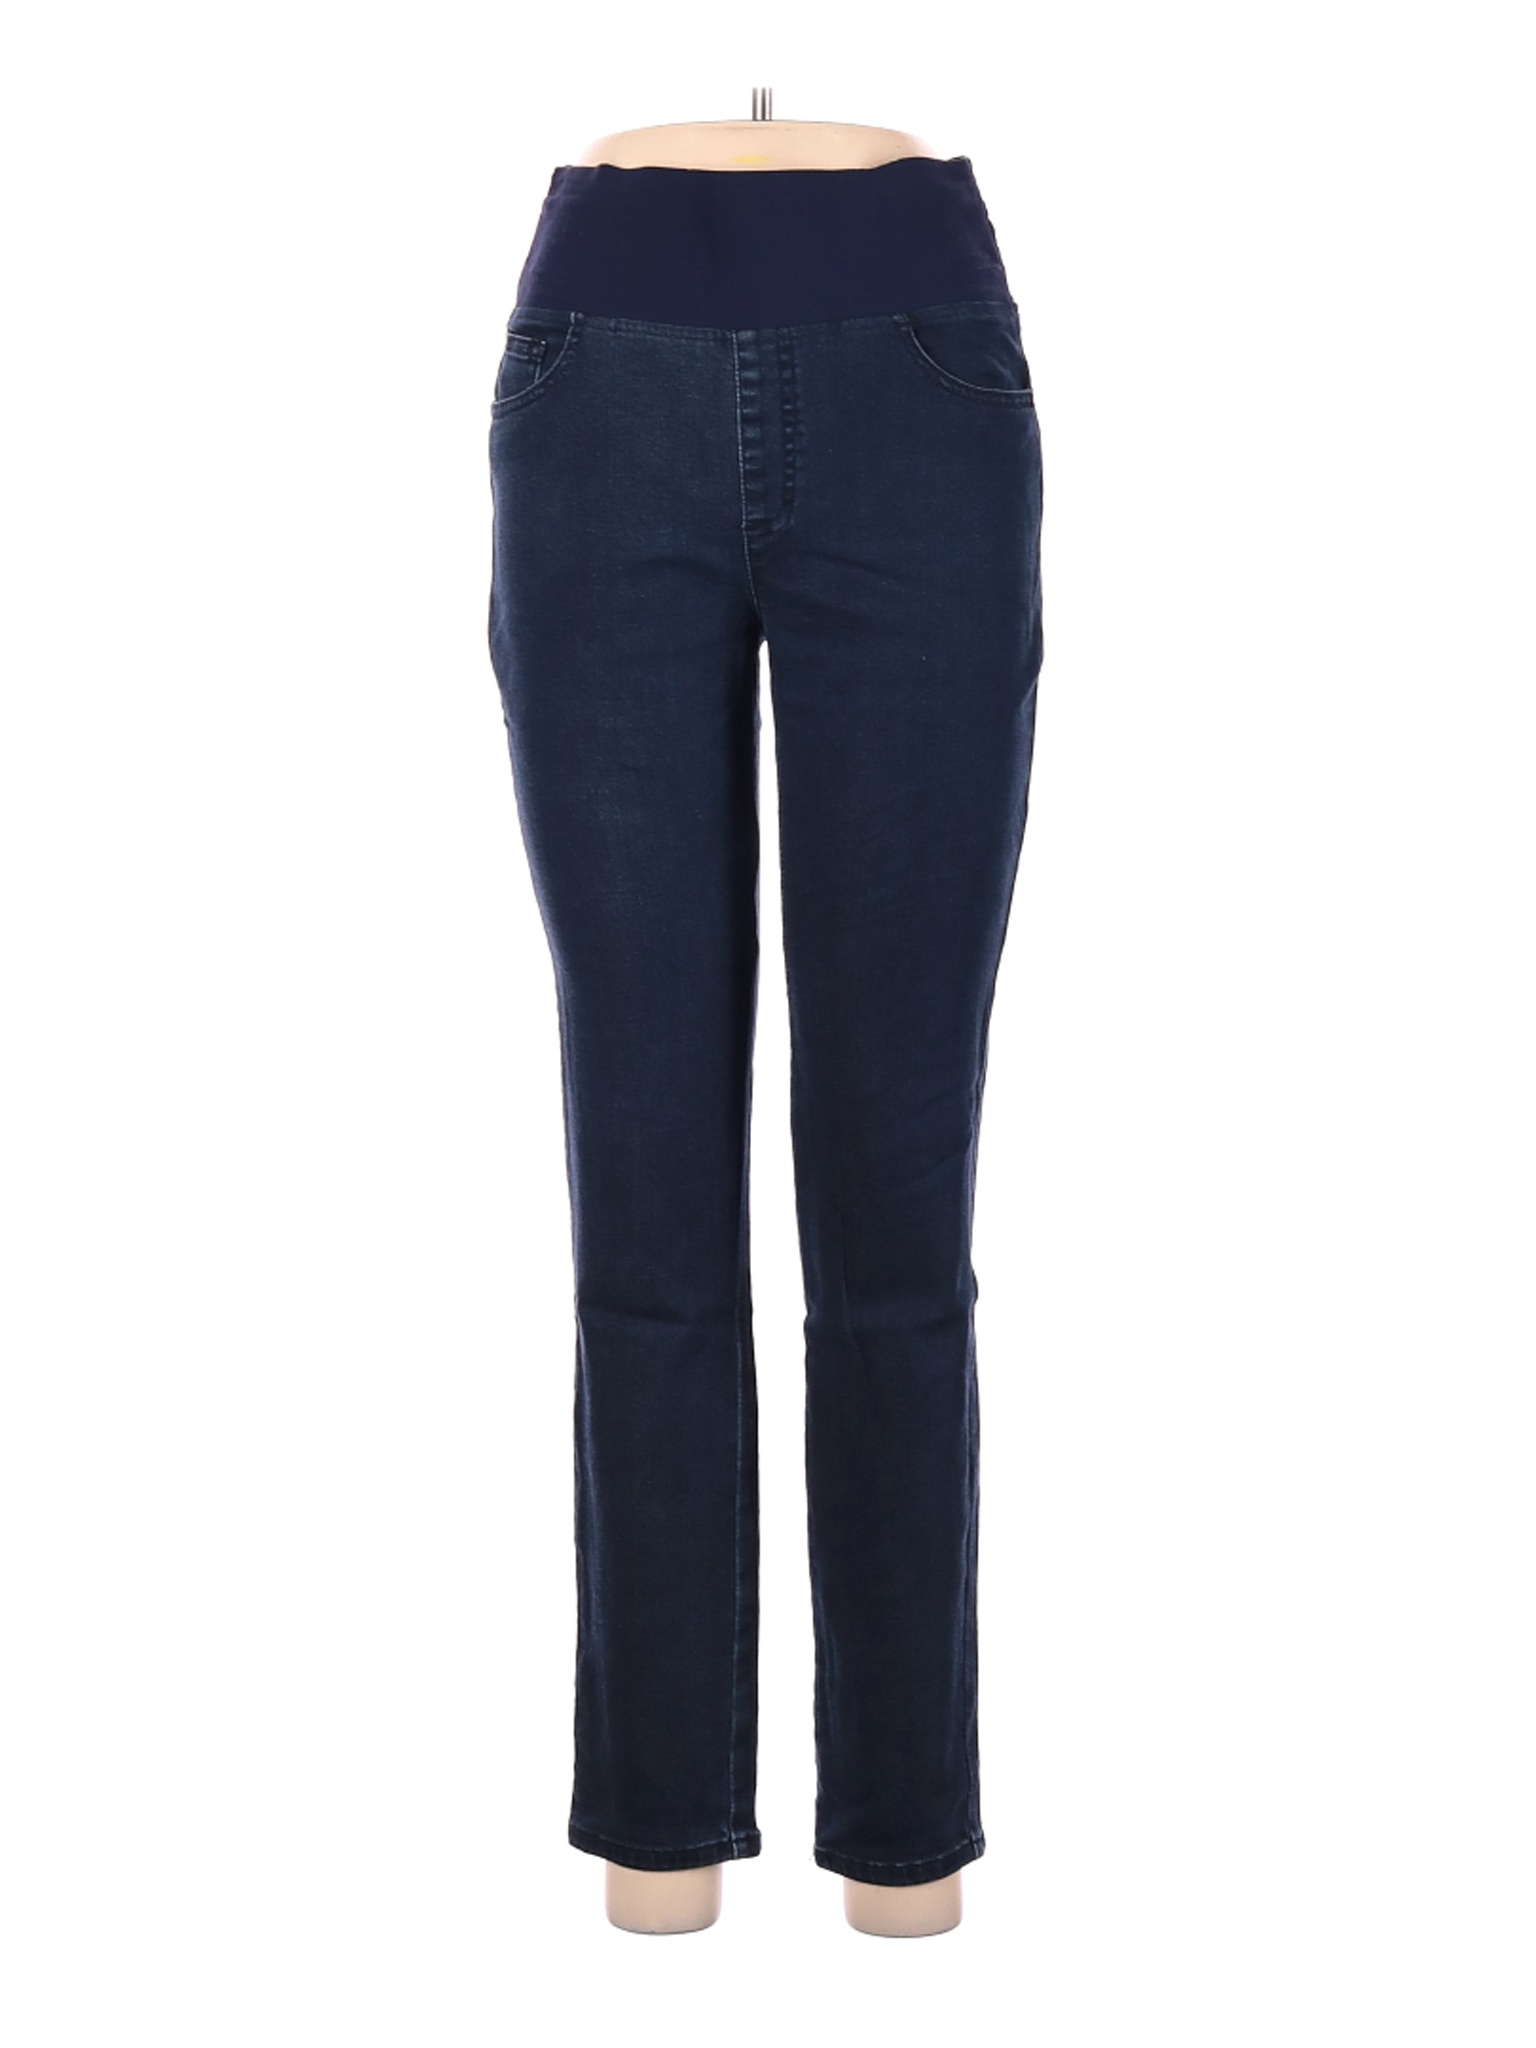 Foxcroft Women Blue Jeans 8 | eBay